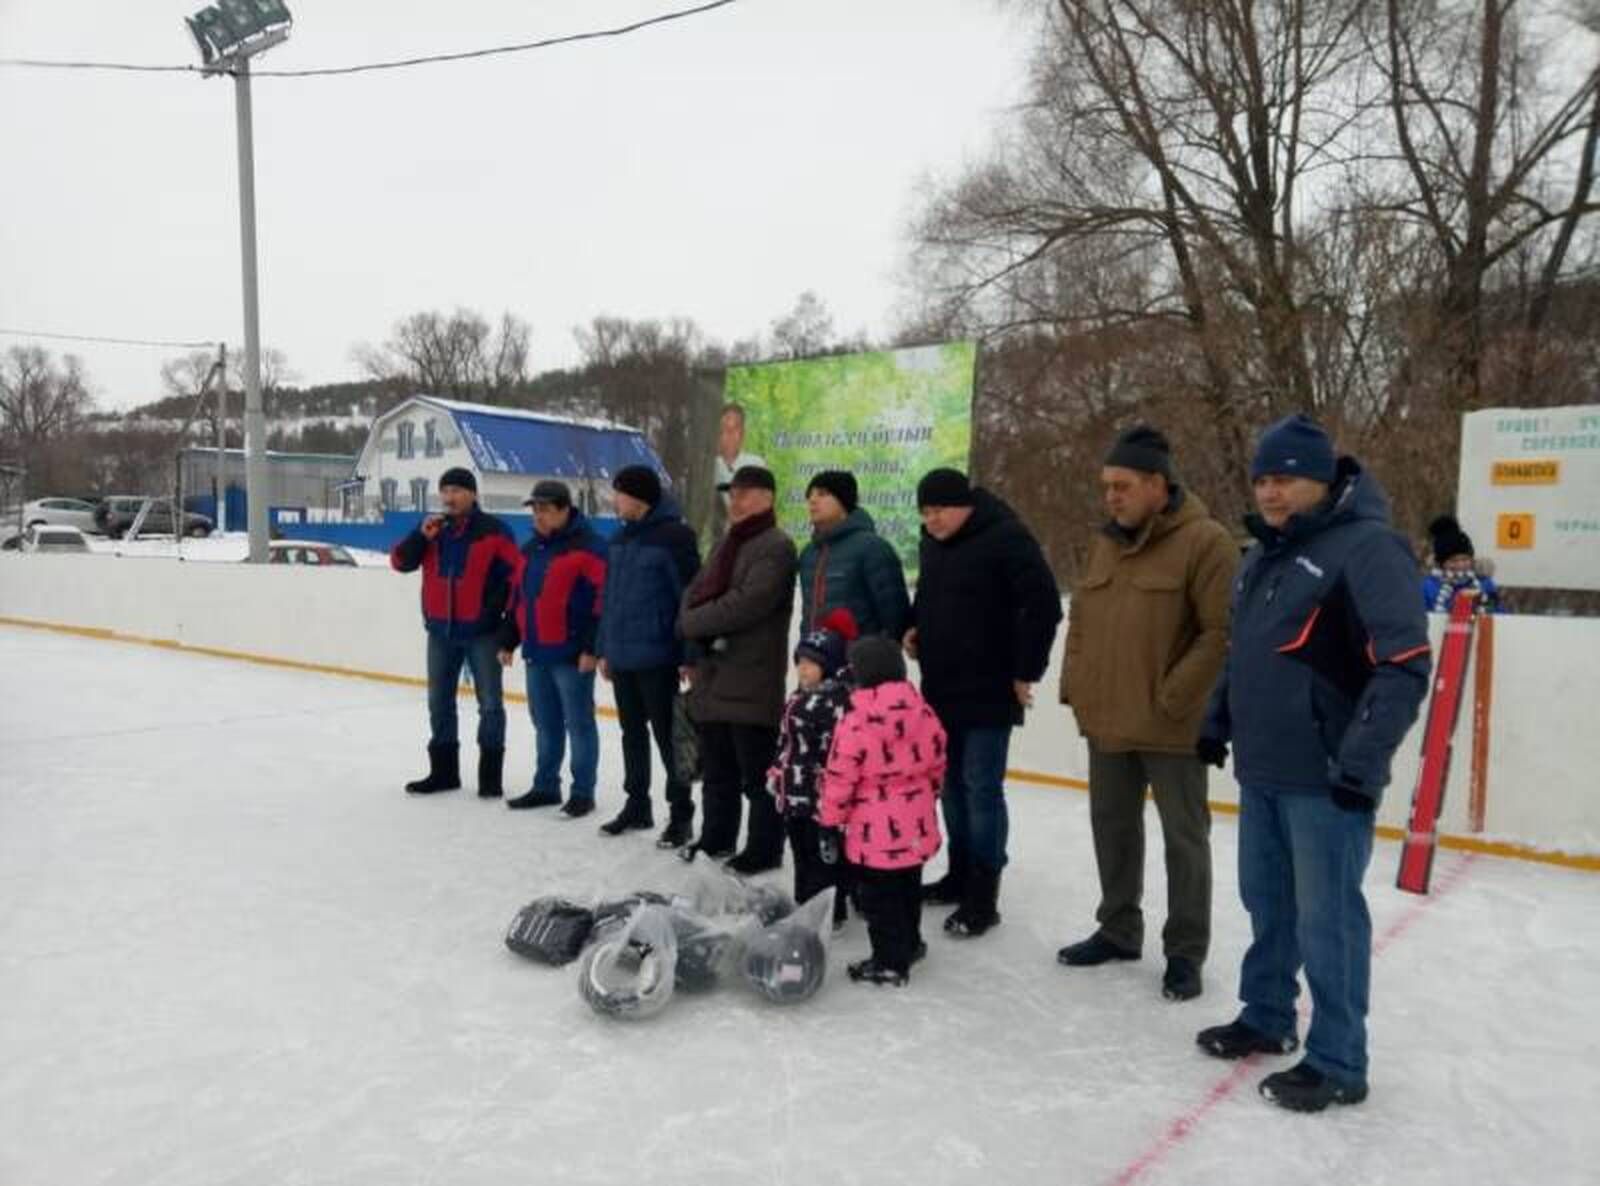 Кавиев Вазыйх Нәфыйк улы истәлегенә багышланган хоккей буенча традицион турнир